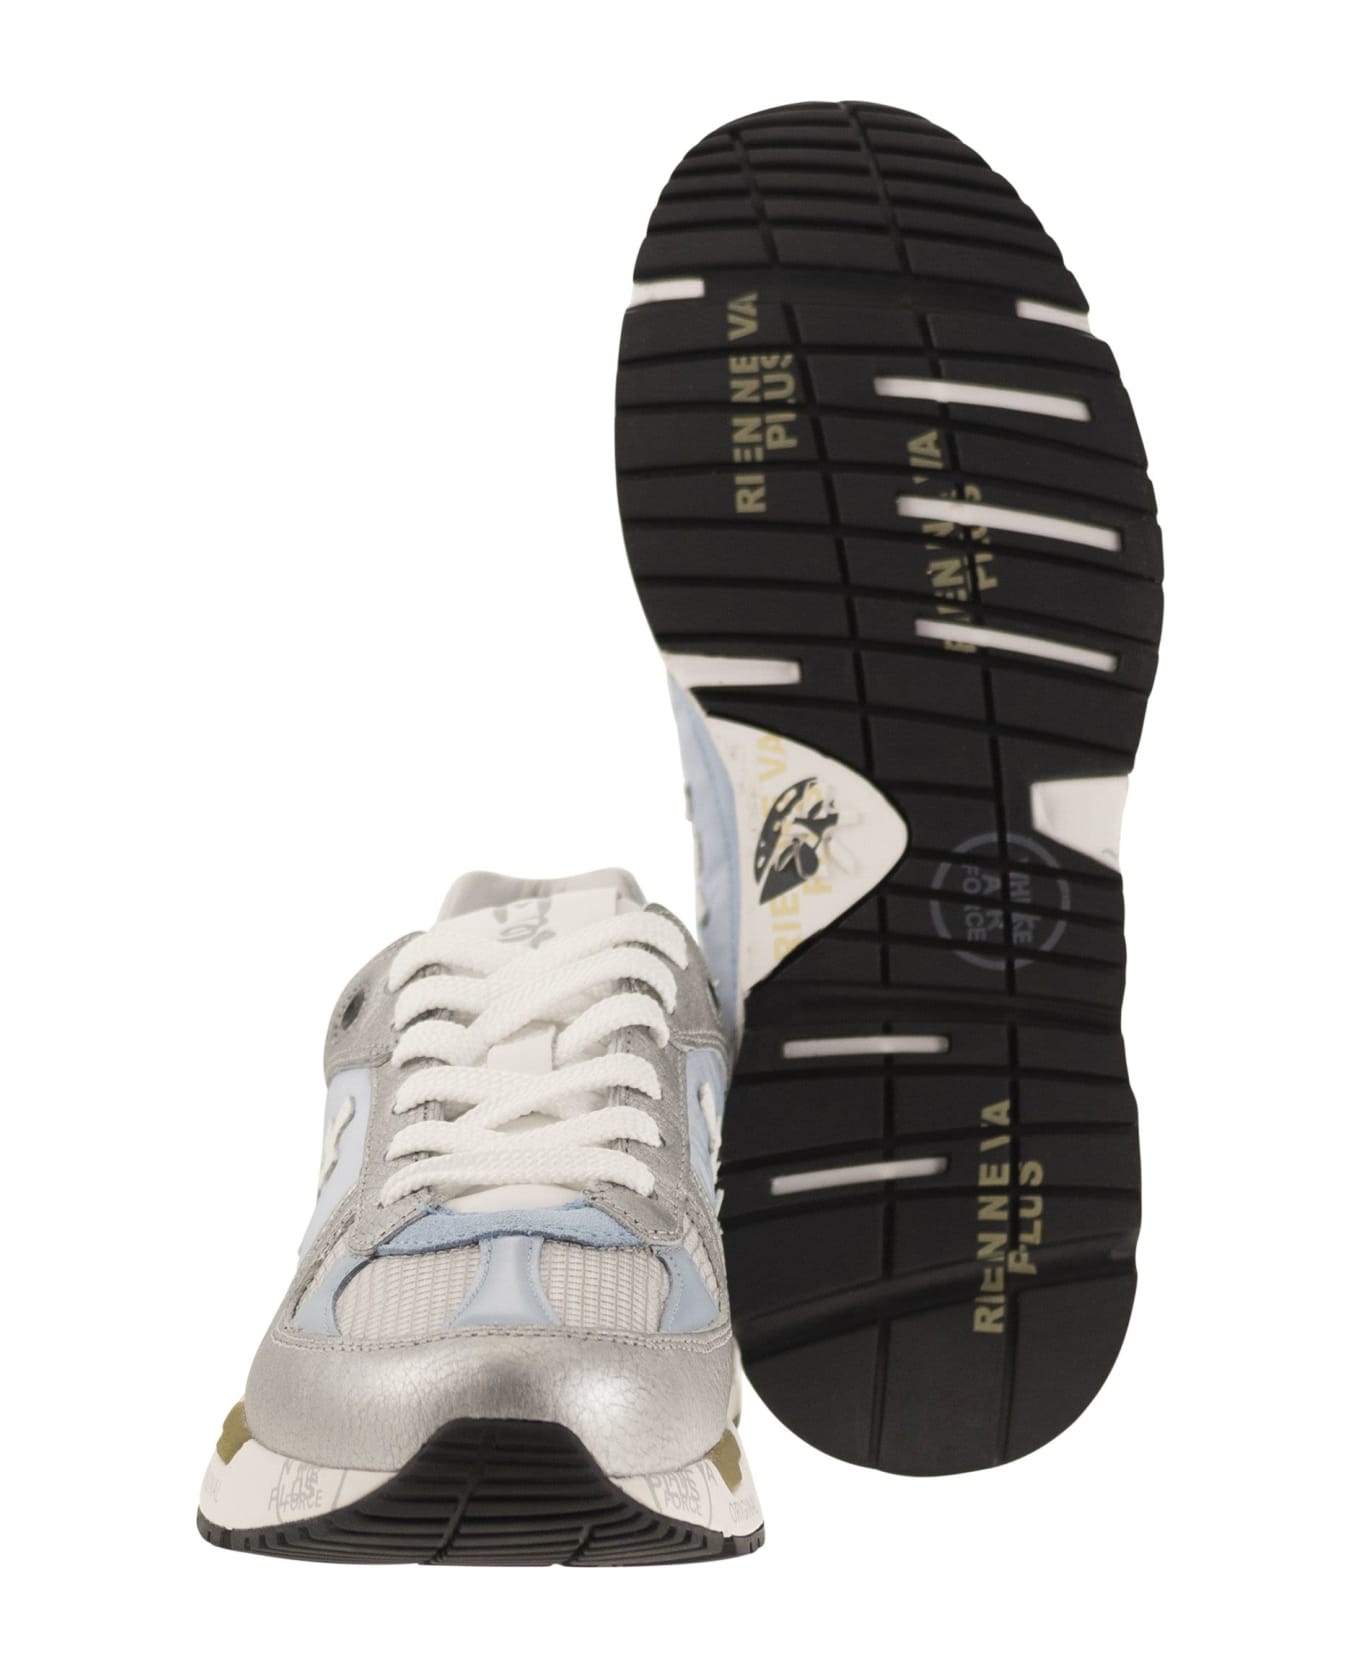 Premiata Mased Bi Material Sneakers - Light Blue スニーカー